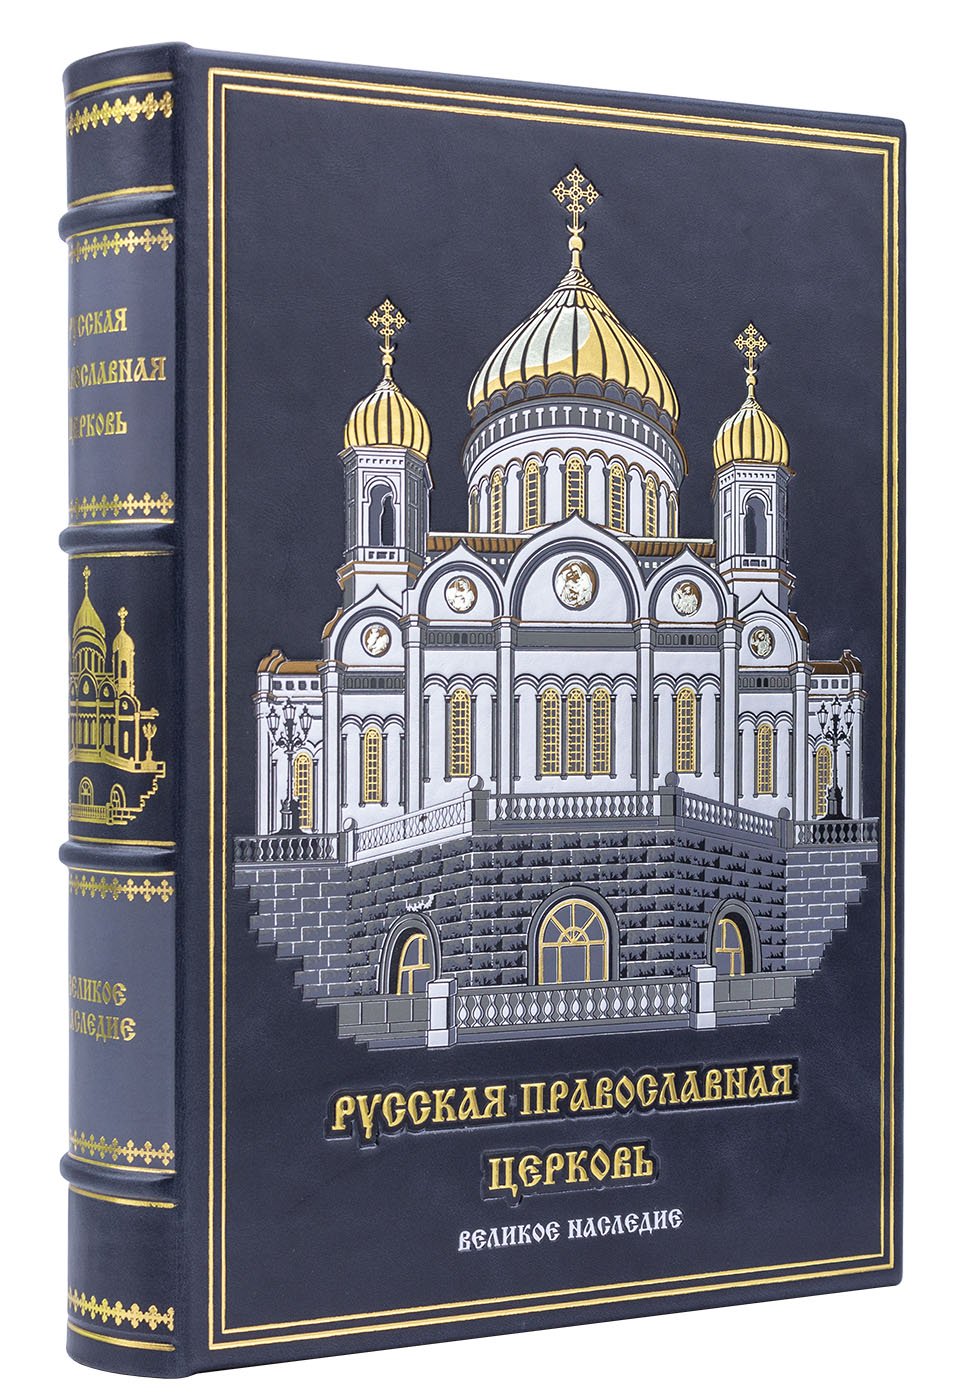 Русская православная церковь (в коробе). Подарочное издание в коже